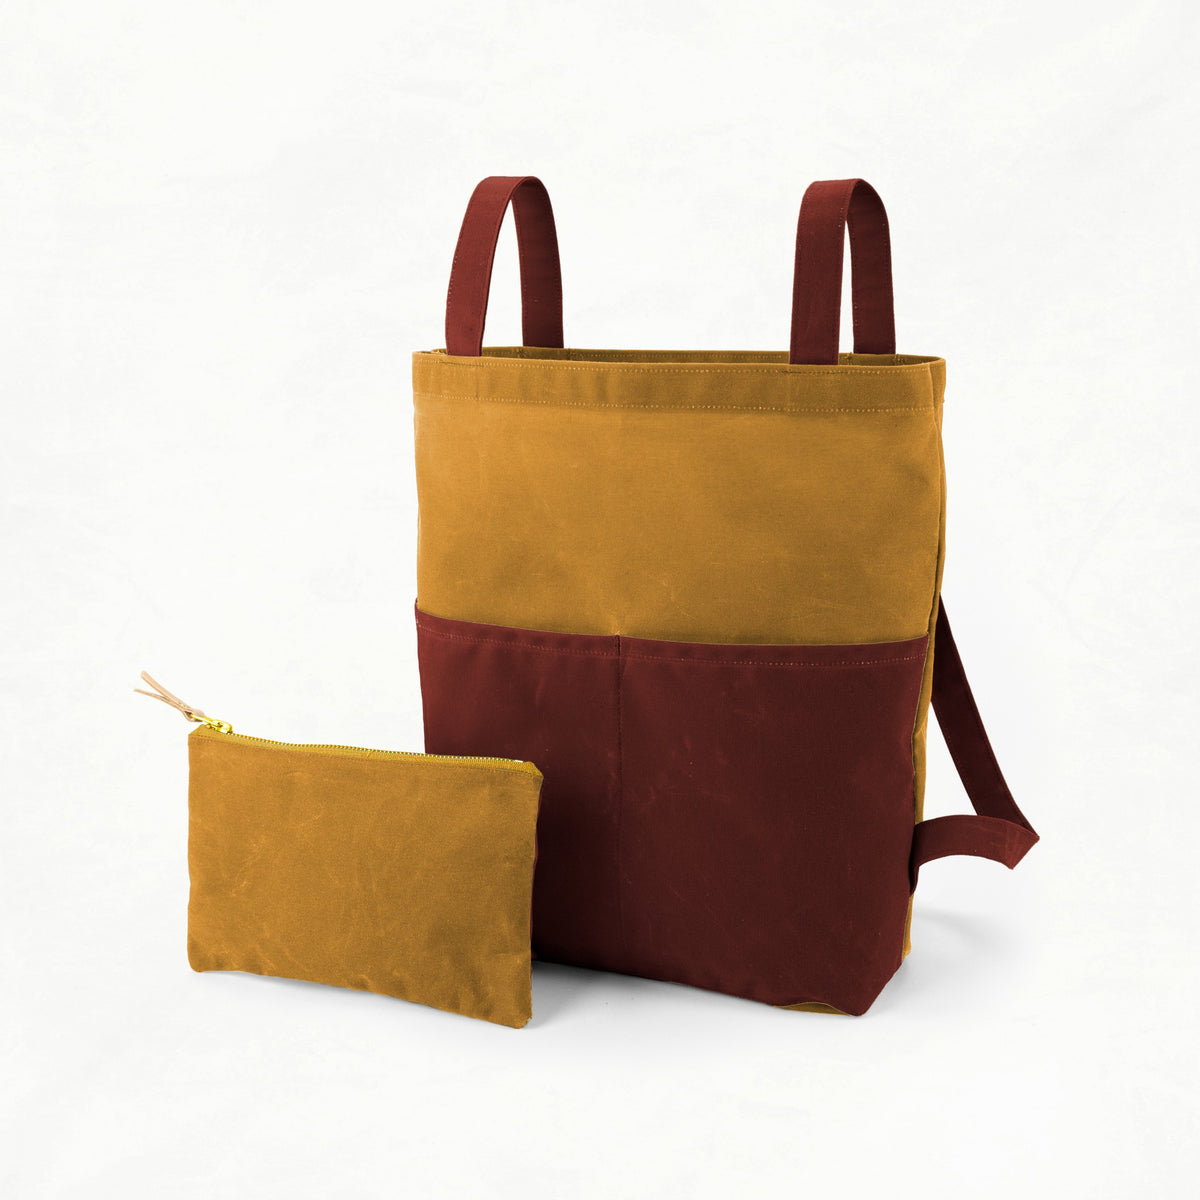 Belmont - Mustard Bag Maker Kit